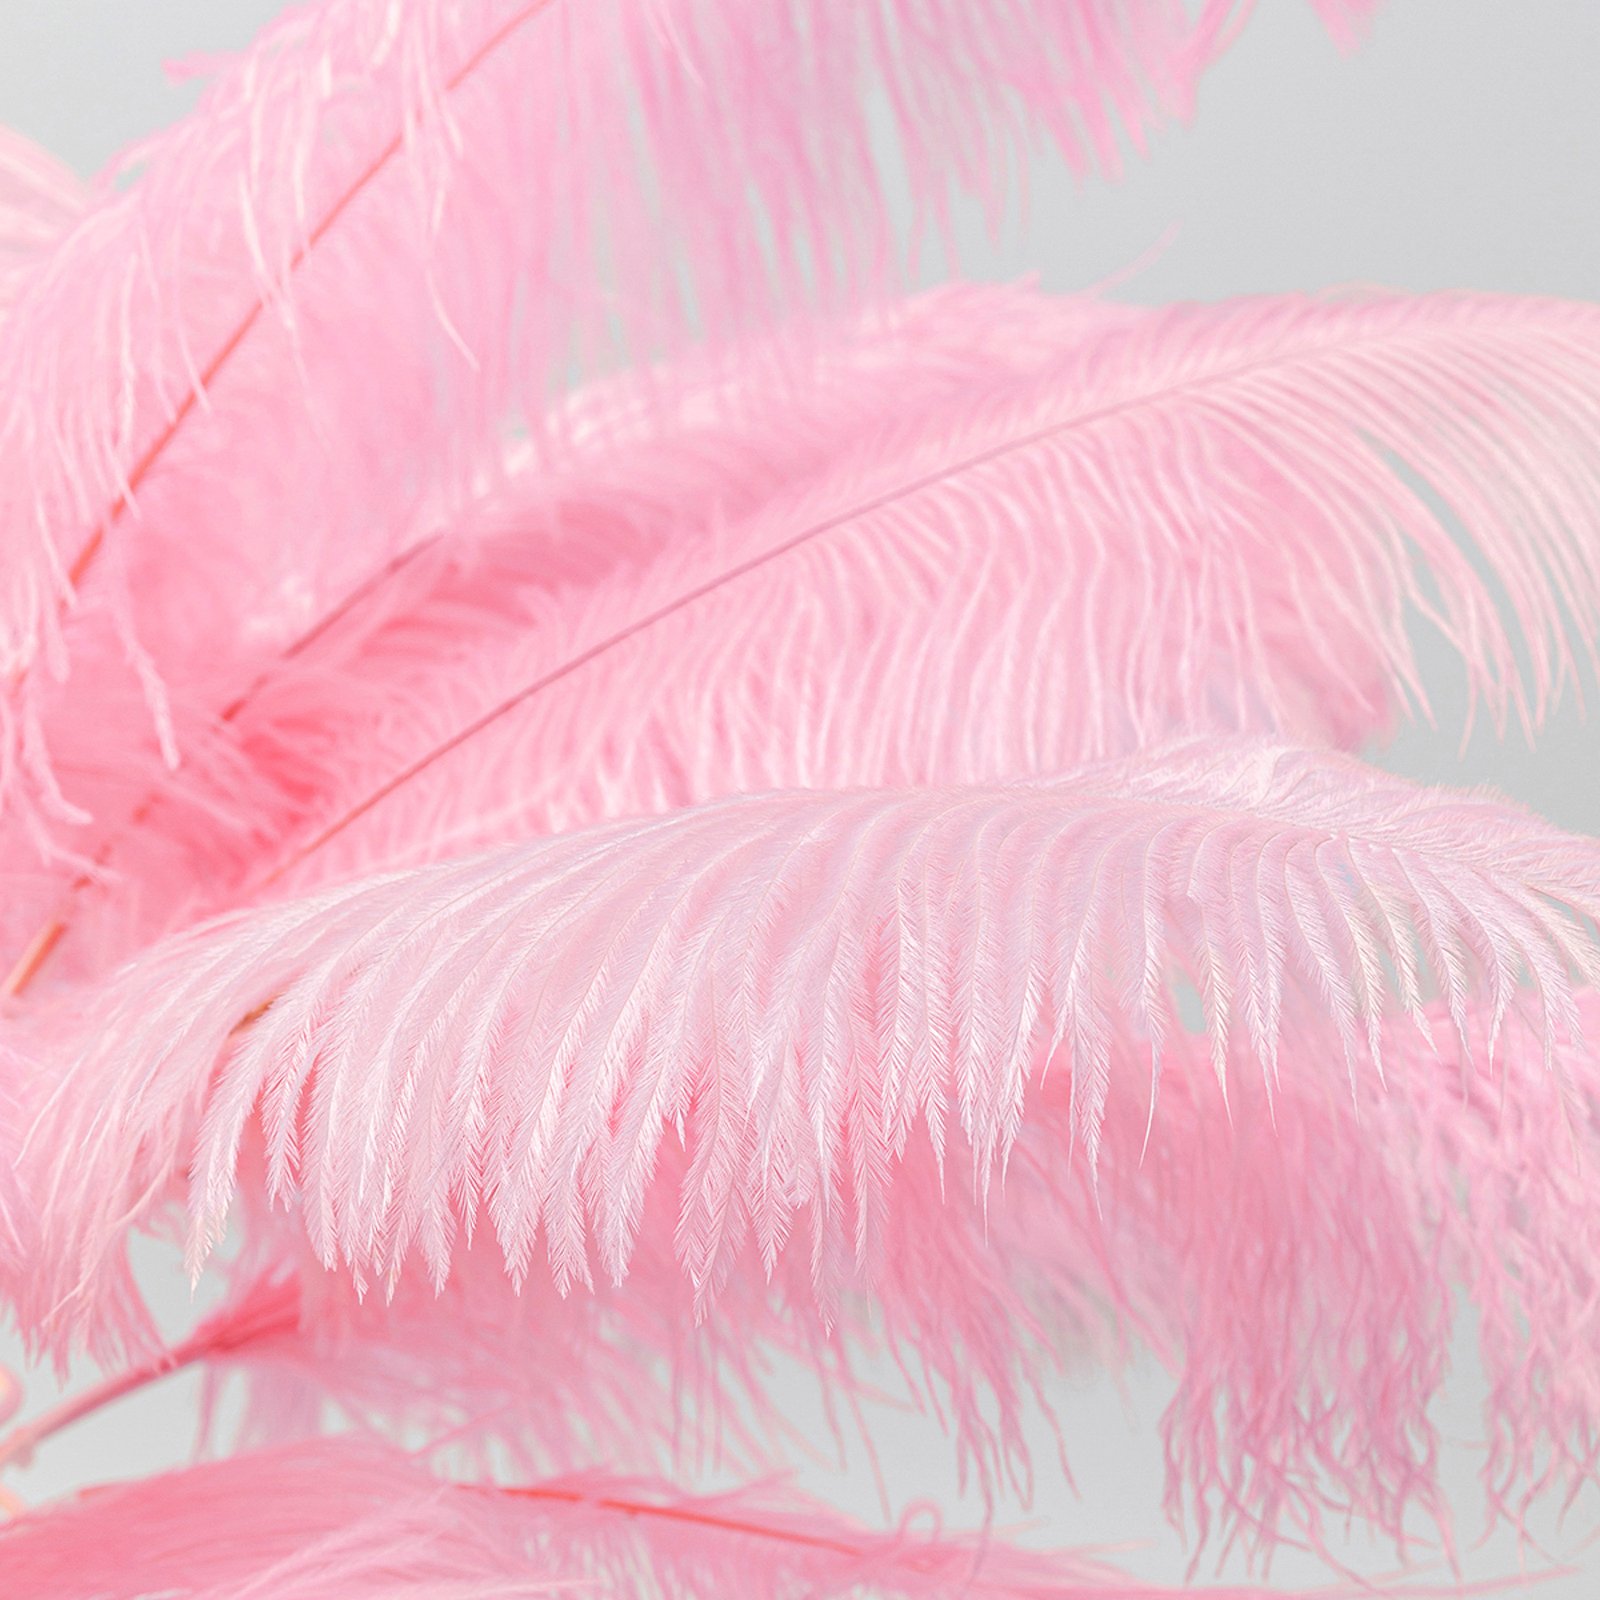 KARE Feather Palm Tischleuchte mit Federn, pink